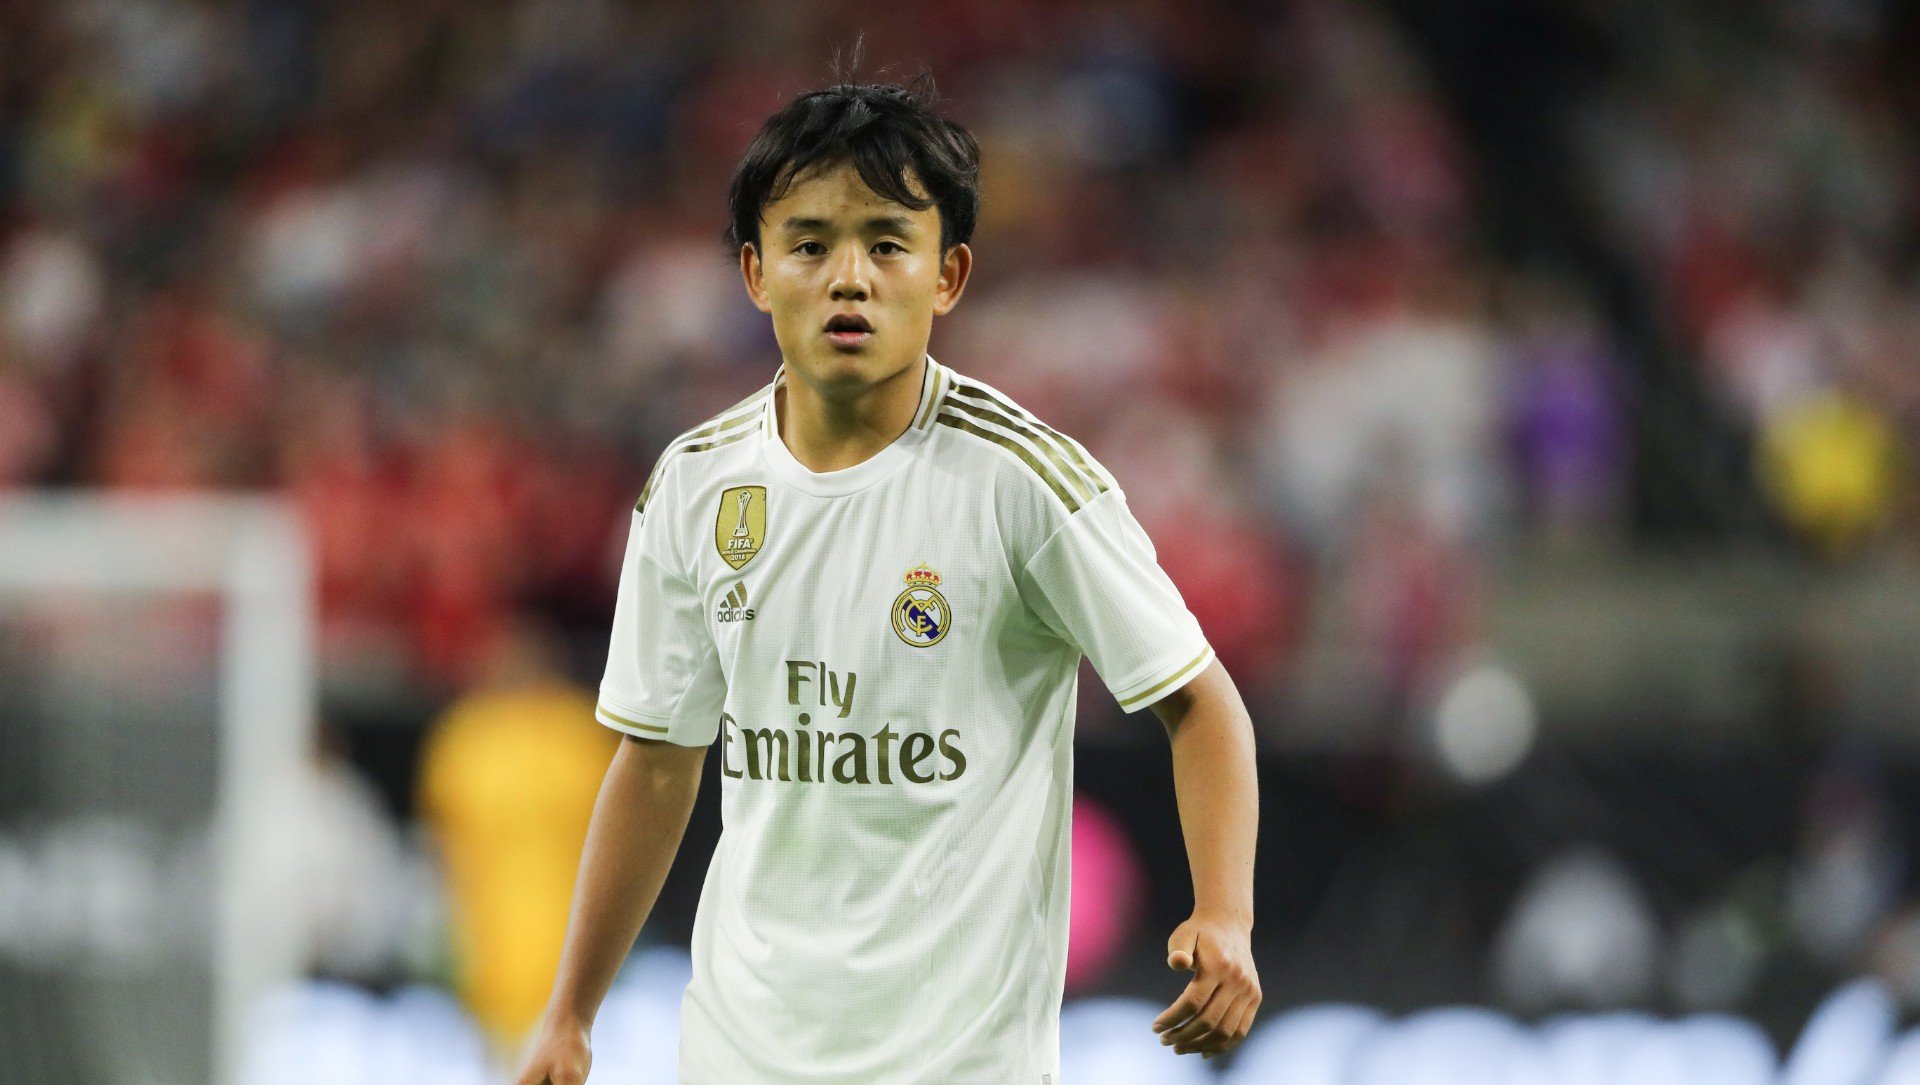 ESQUENTOU - Conforme noticiou o Marca, o Villarreal está conversando com o Real Madrid para encerrar antes da hora o empréstimo de Takefusa Kubo.